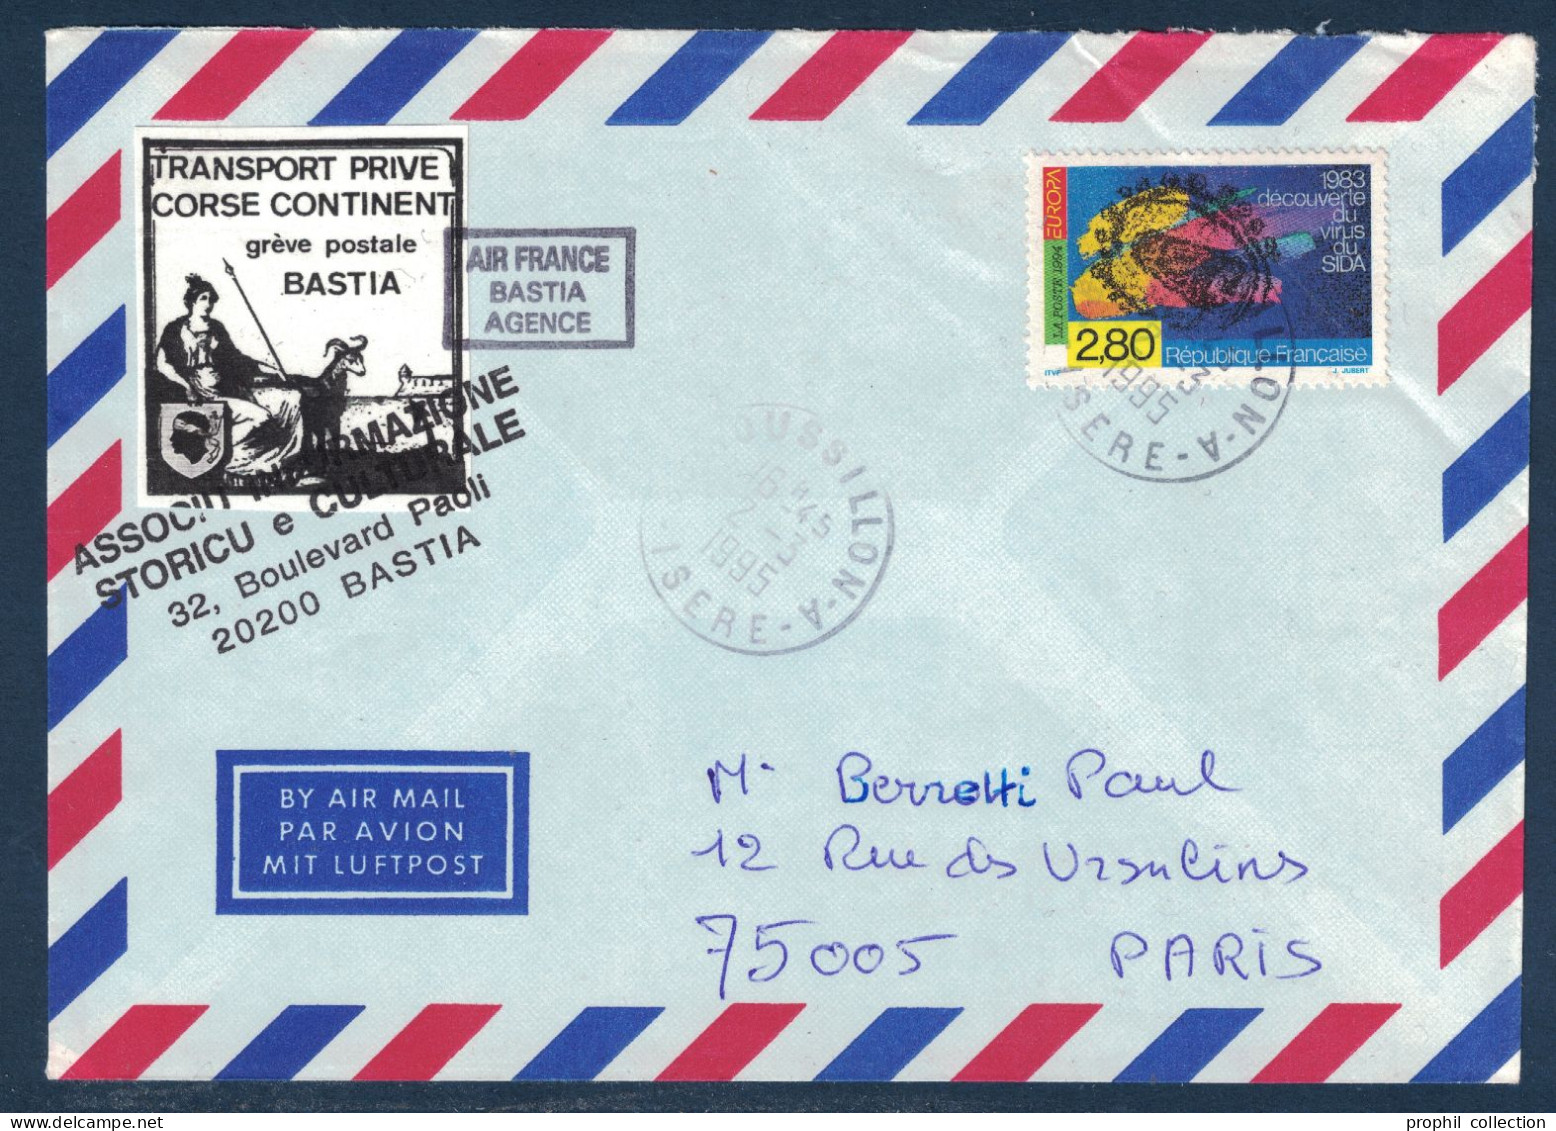 LETTRE GREVE POSTALE BASTIA 1995 VIGNETTE TRANSPORT PRIVÉ CORSE CONTINENT + TIMBRE SIDA Pour PARIS AIR FRANCE AGENCE - Documents